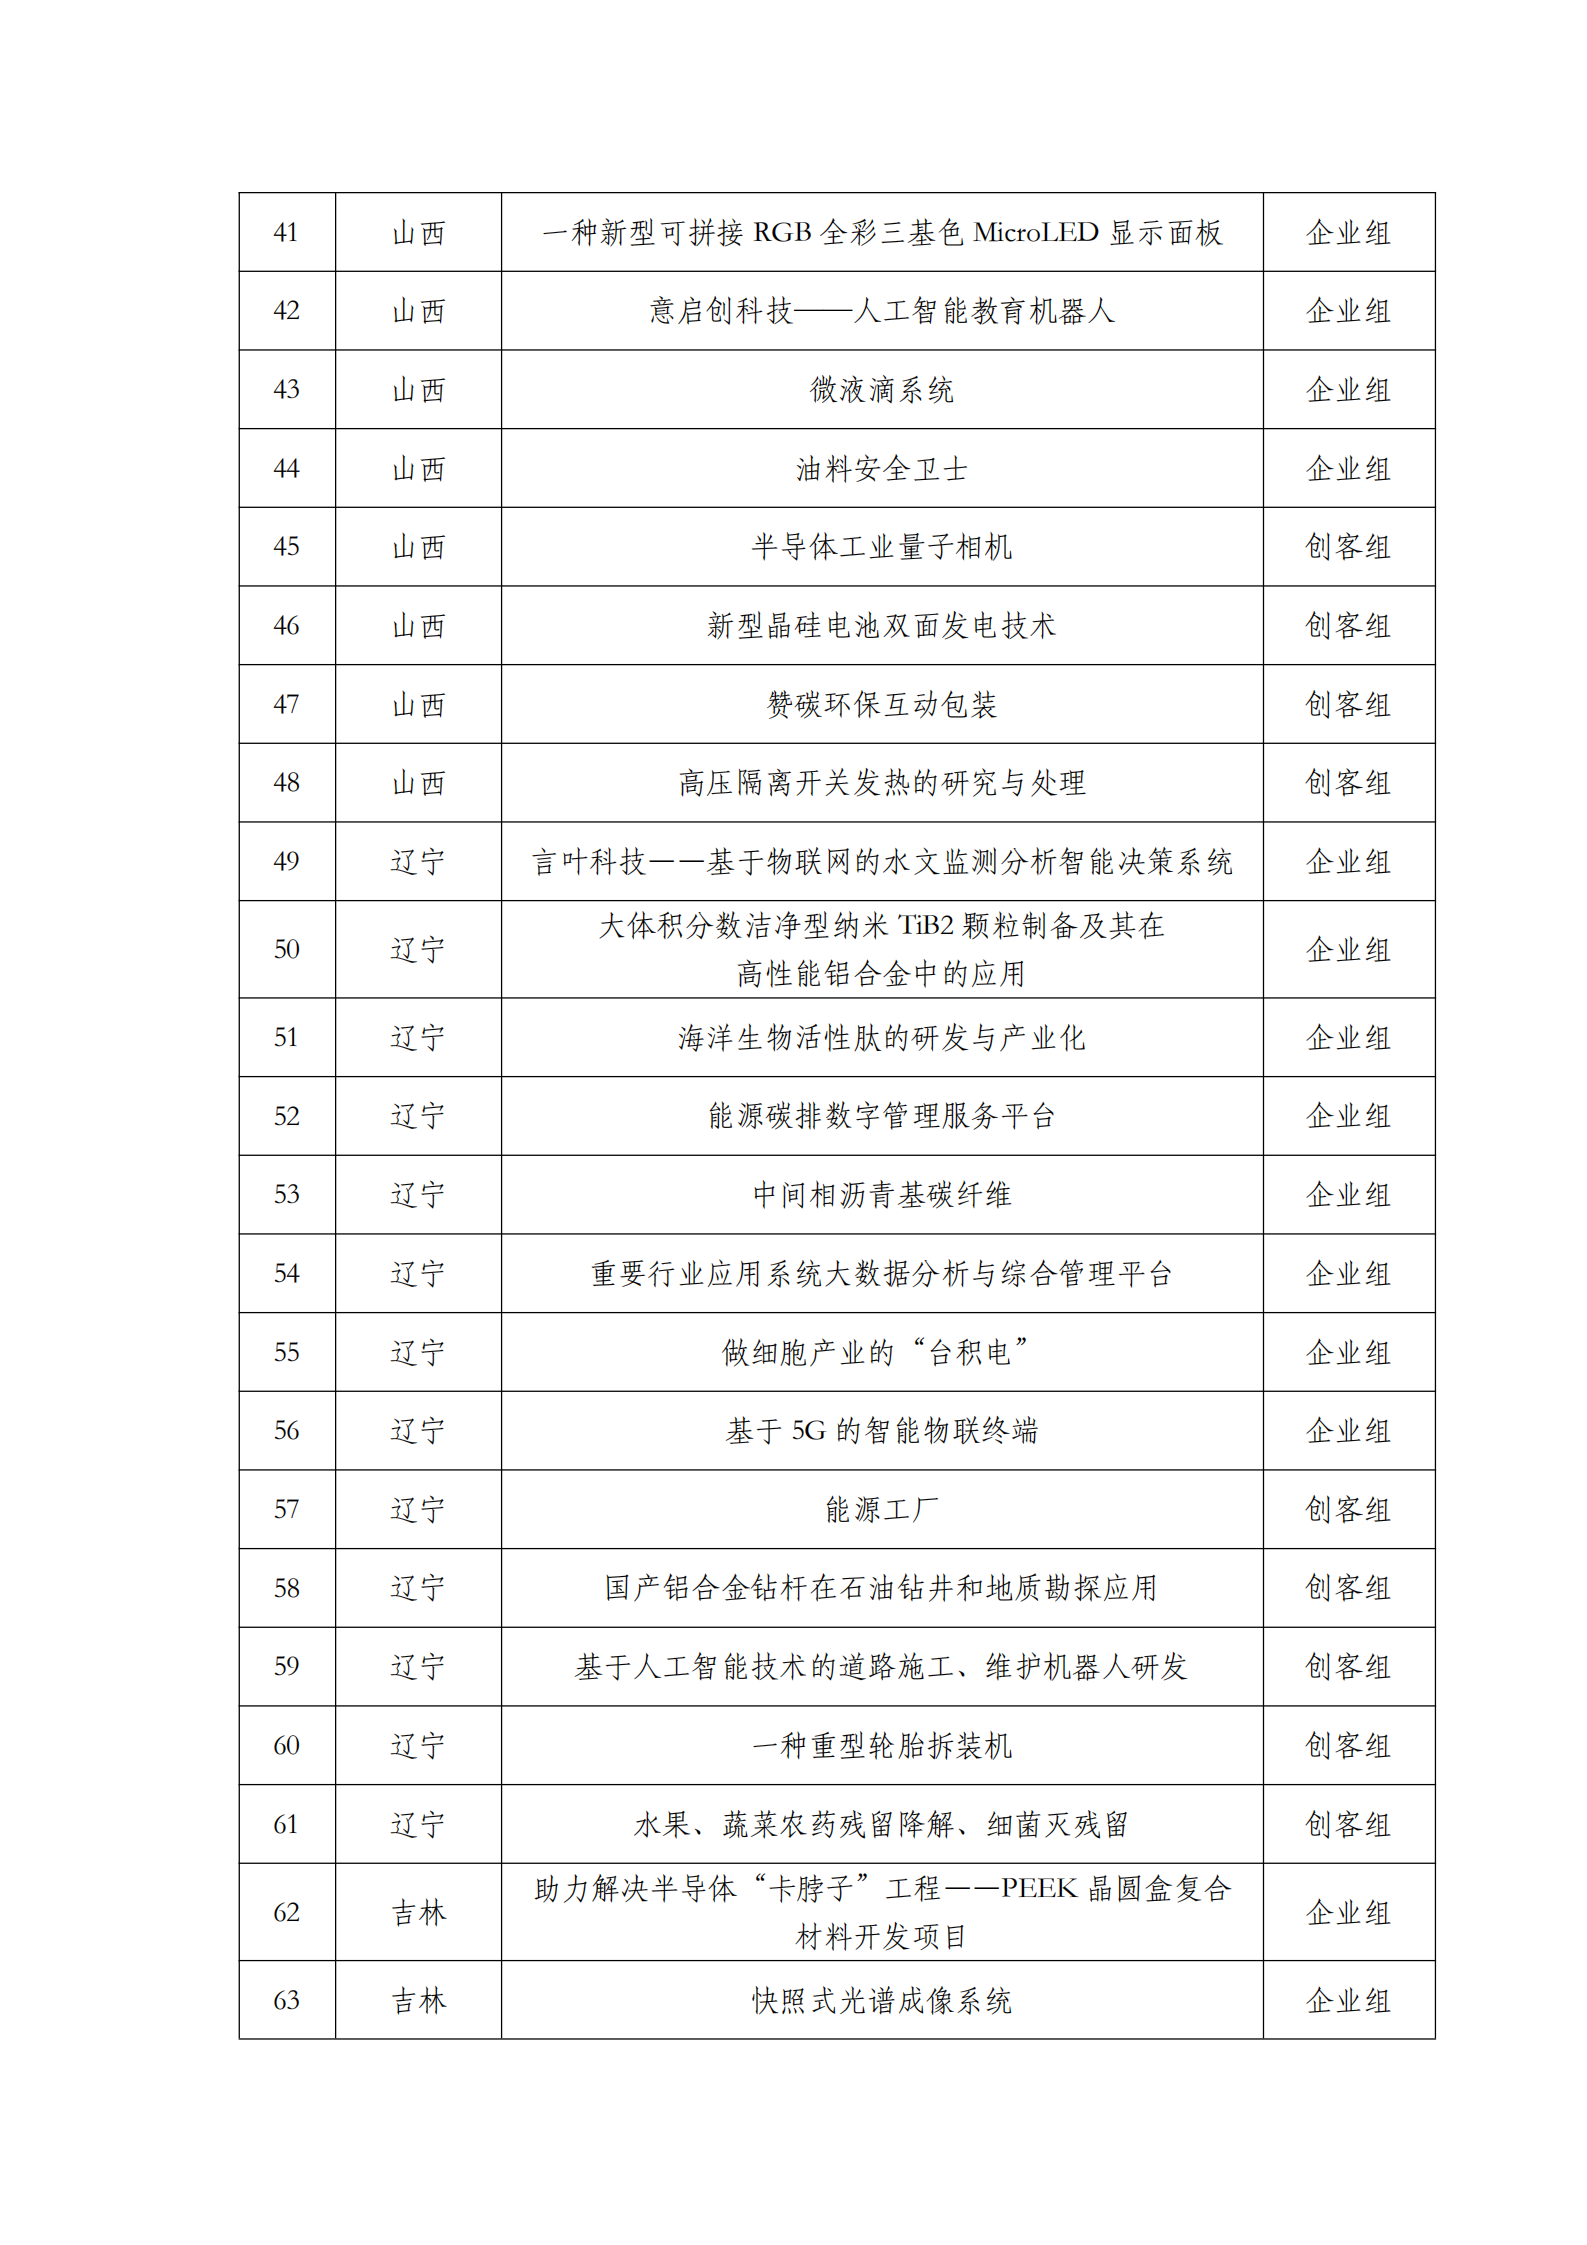 第六届“创客中国”中小企业创新创业大赛500强公示名单_02.png